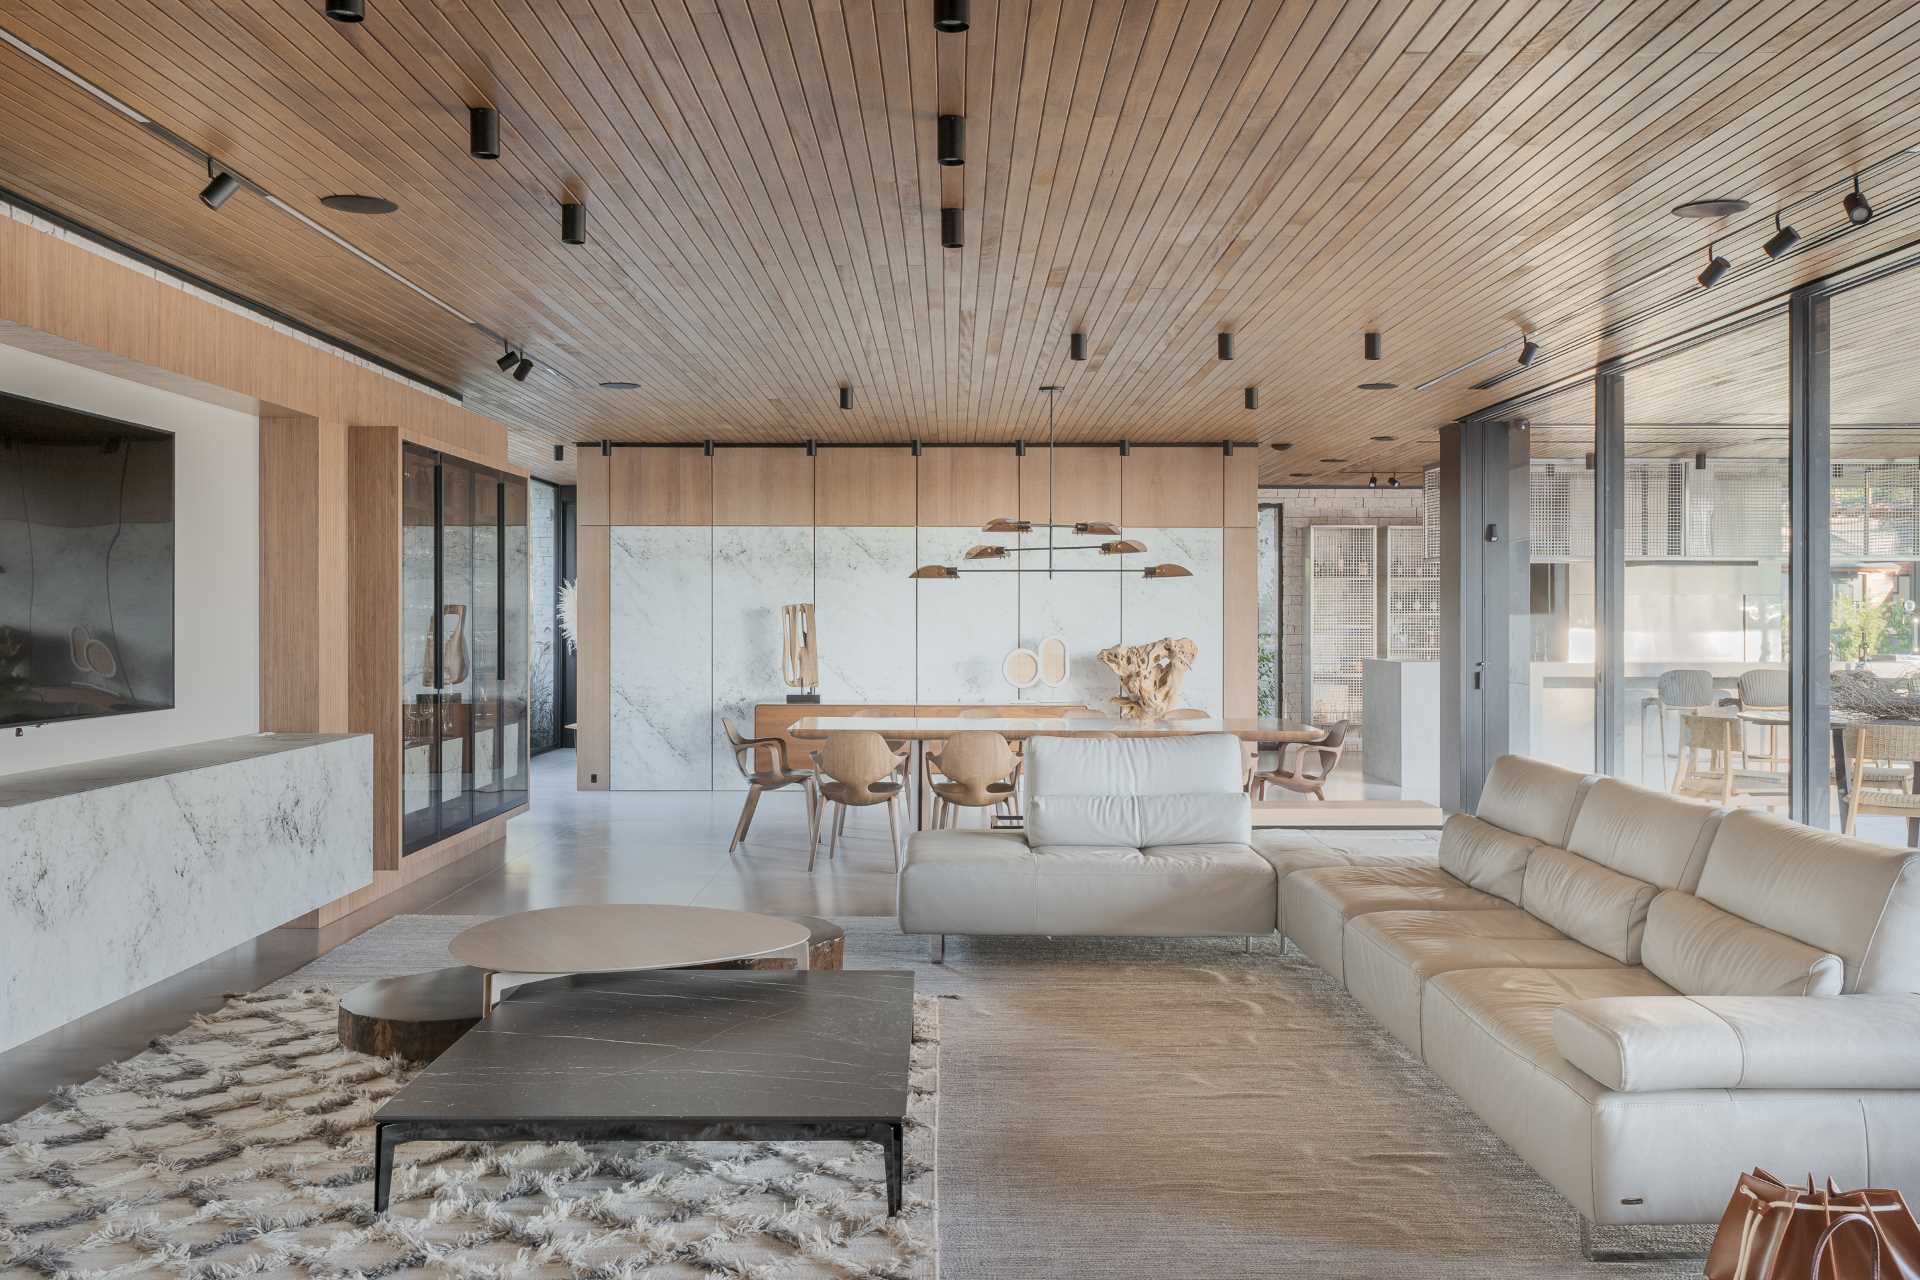 یک سقف چوبی در سرتاسر خانه به نمایش گذاشته شده است، در حالی که اتاق نشیمن شامل یک کاناپه L شکل و همچنین یک کاناپه ثانویه در کنار پله ها است.